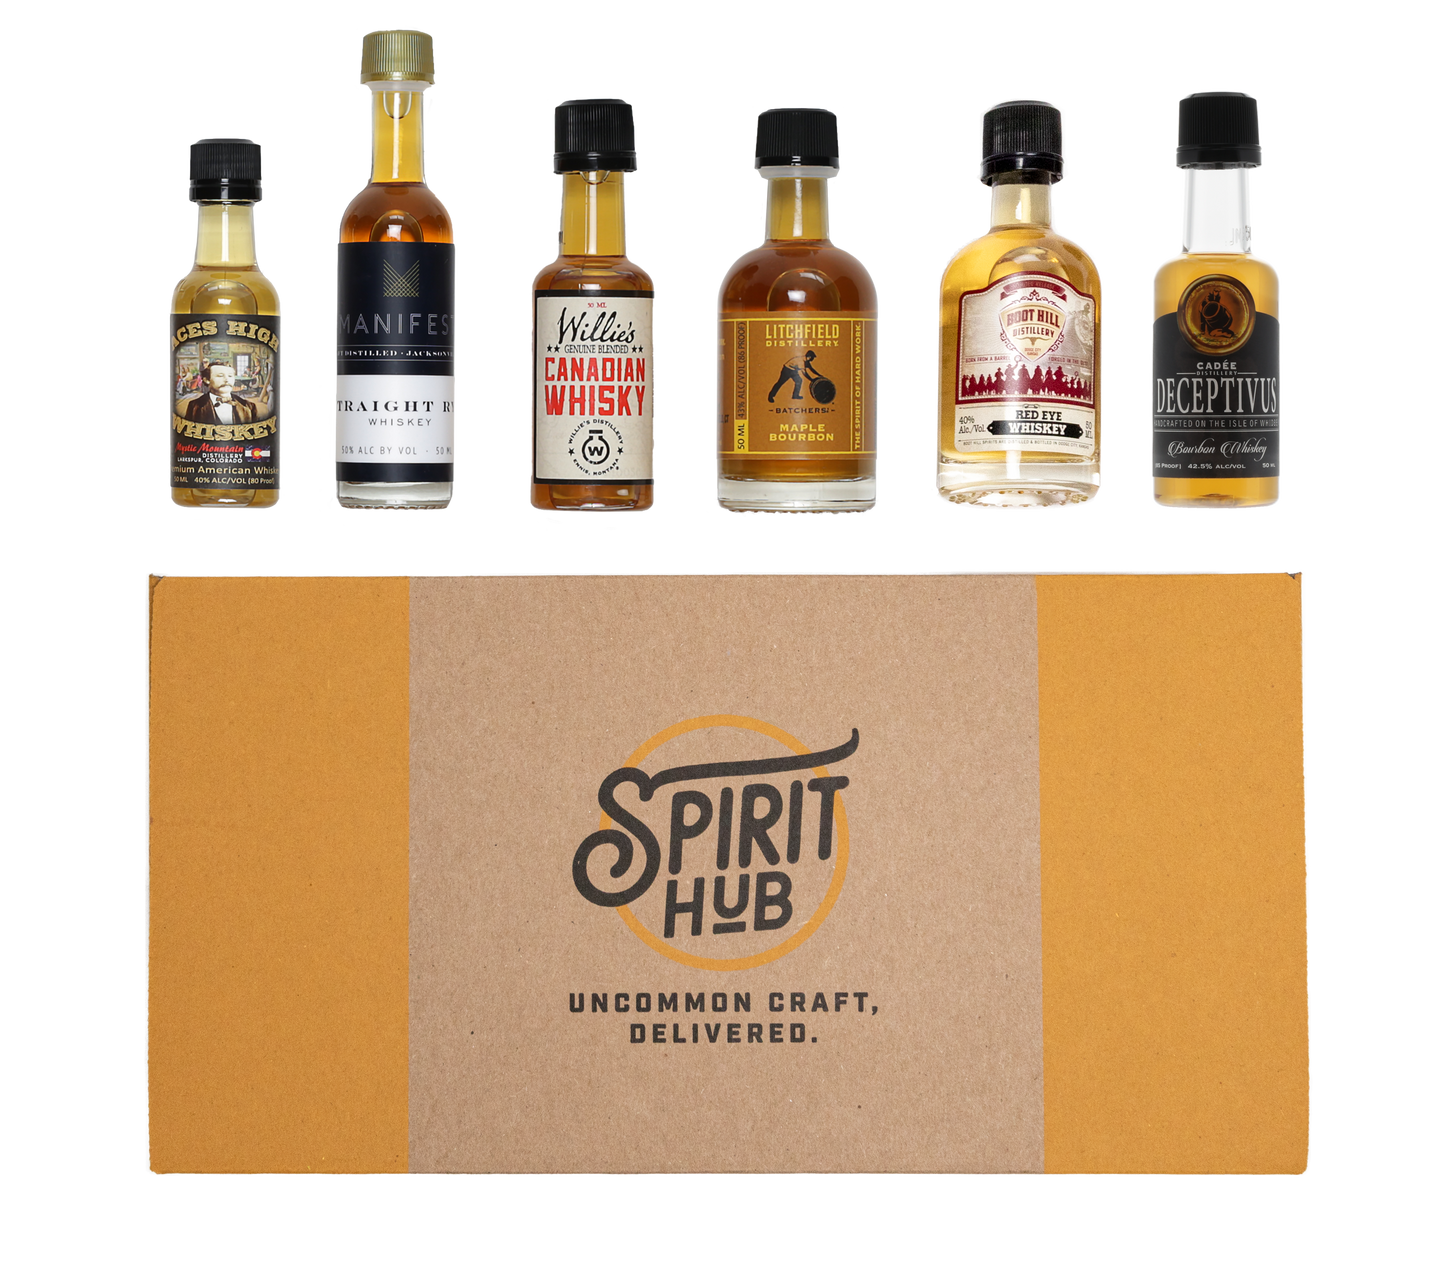 The Whiskey Revolution Spirit Box